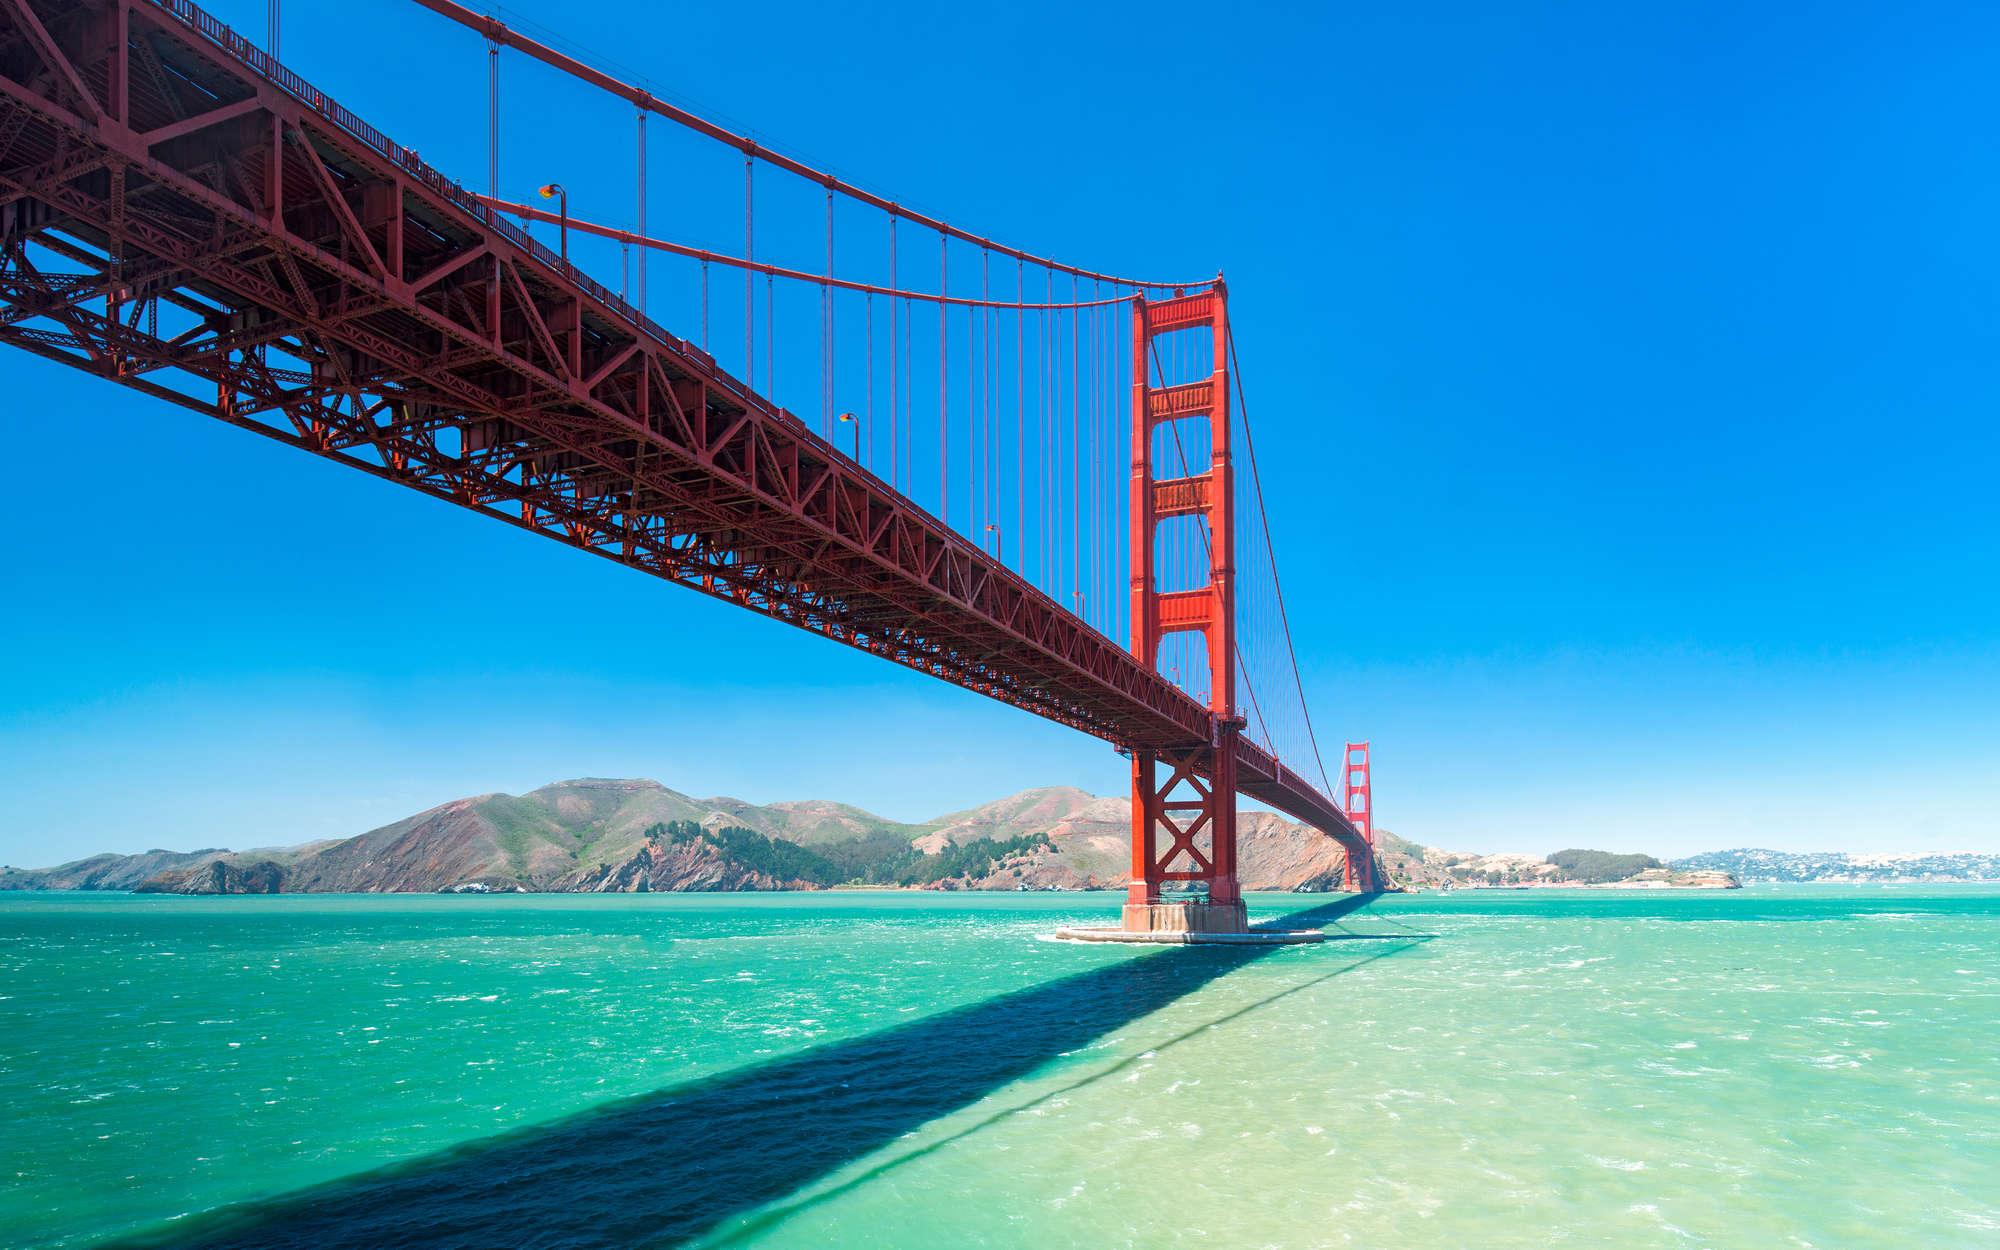             Golden Gate Bridge in San Francisco Onderlaag behang - Strukturenvlies
        